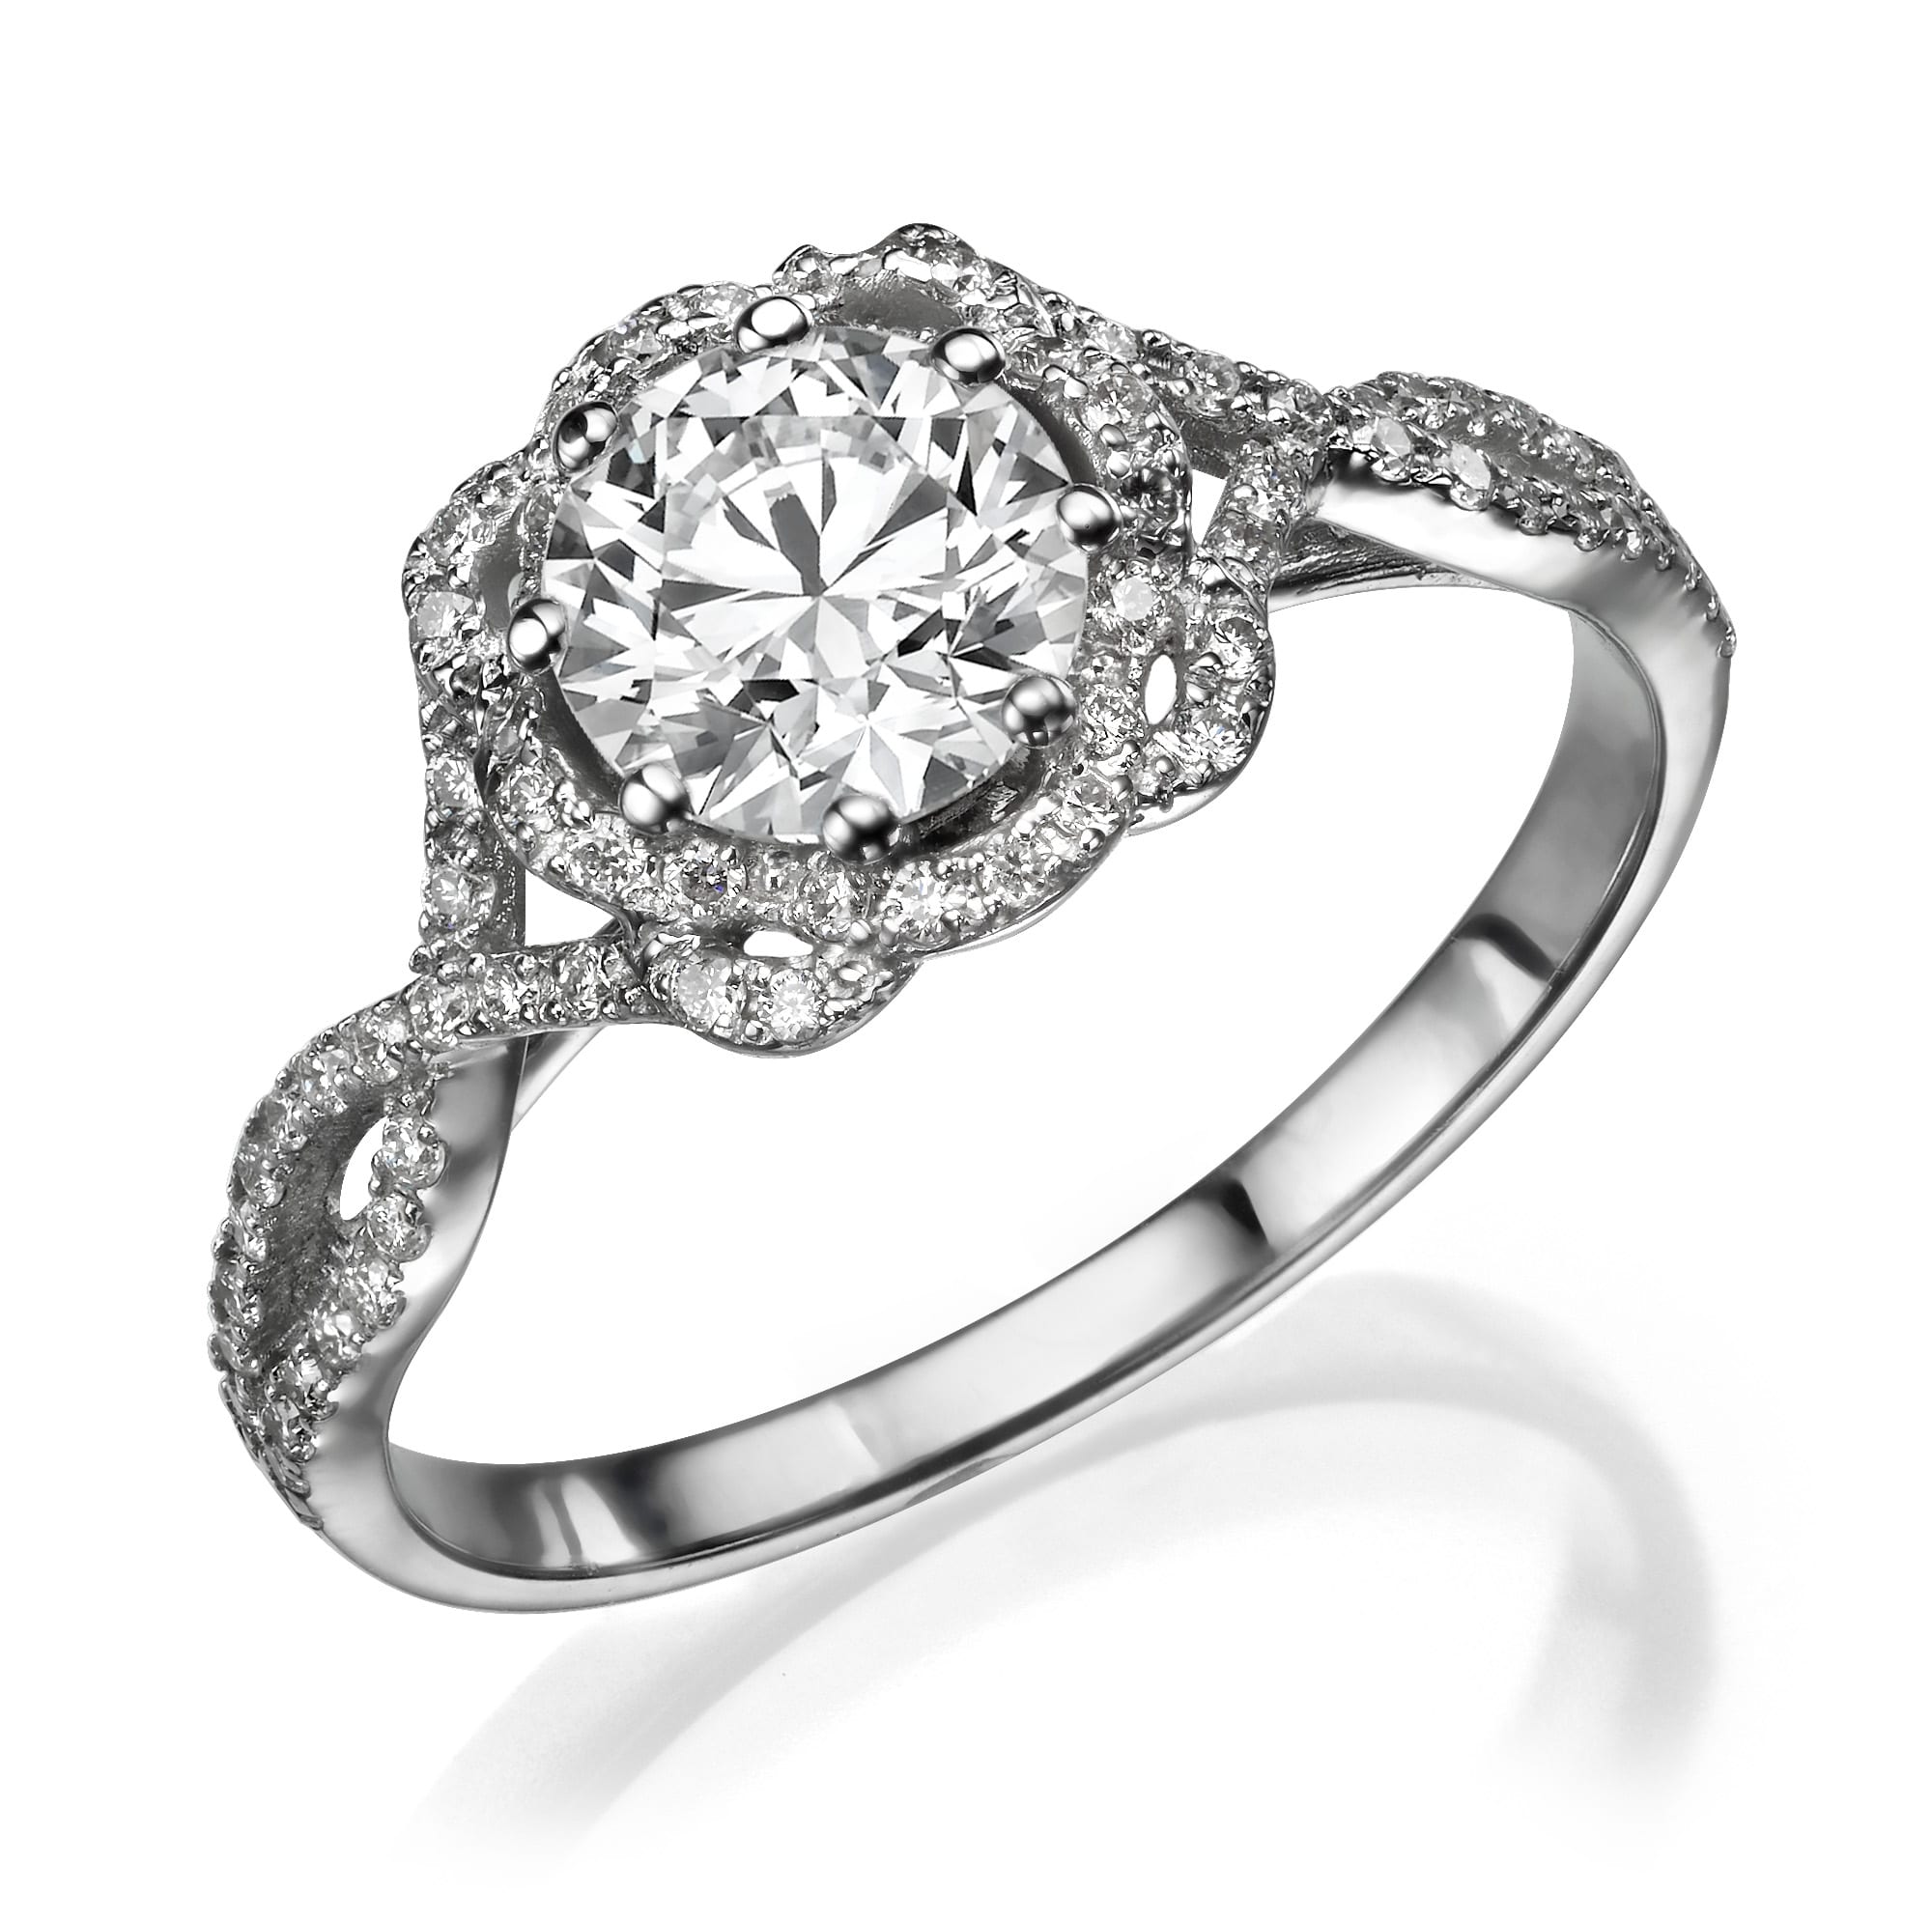 טבעת טבעת אירוסין אלינור נוצצת עם אבן מרכזית גדולה משובצת בעיצוב הילה מורכב בהשראת וינטג', הכוללת יהלומים משובצים על רצועת זהב לבן מלוטש.